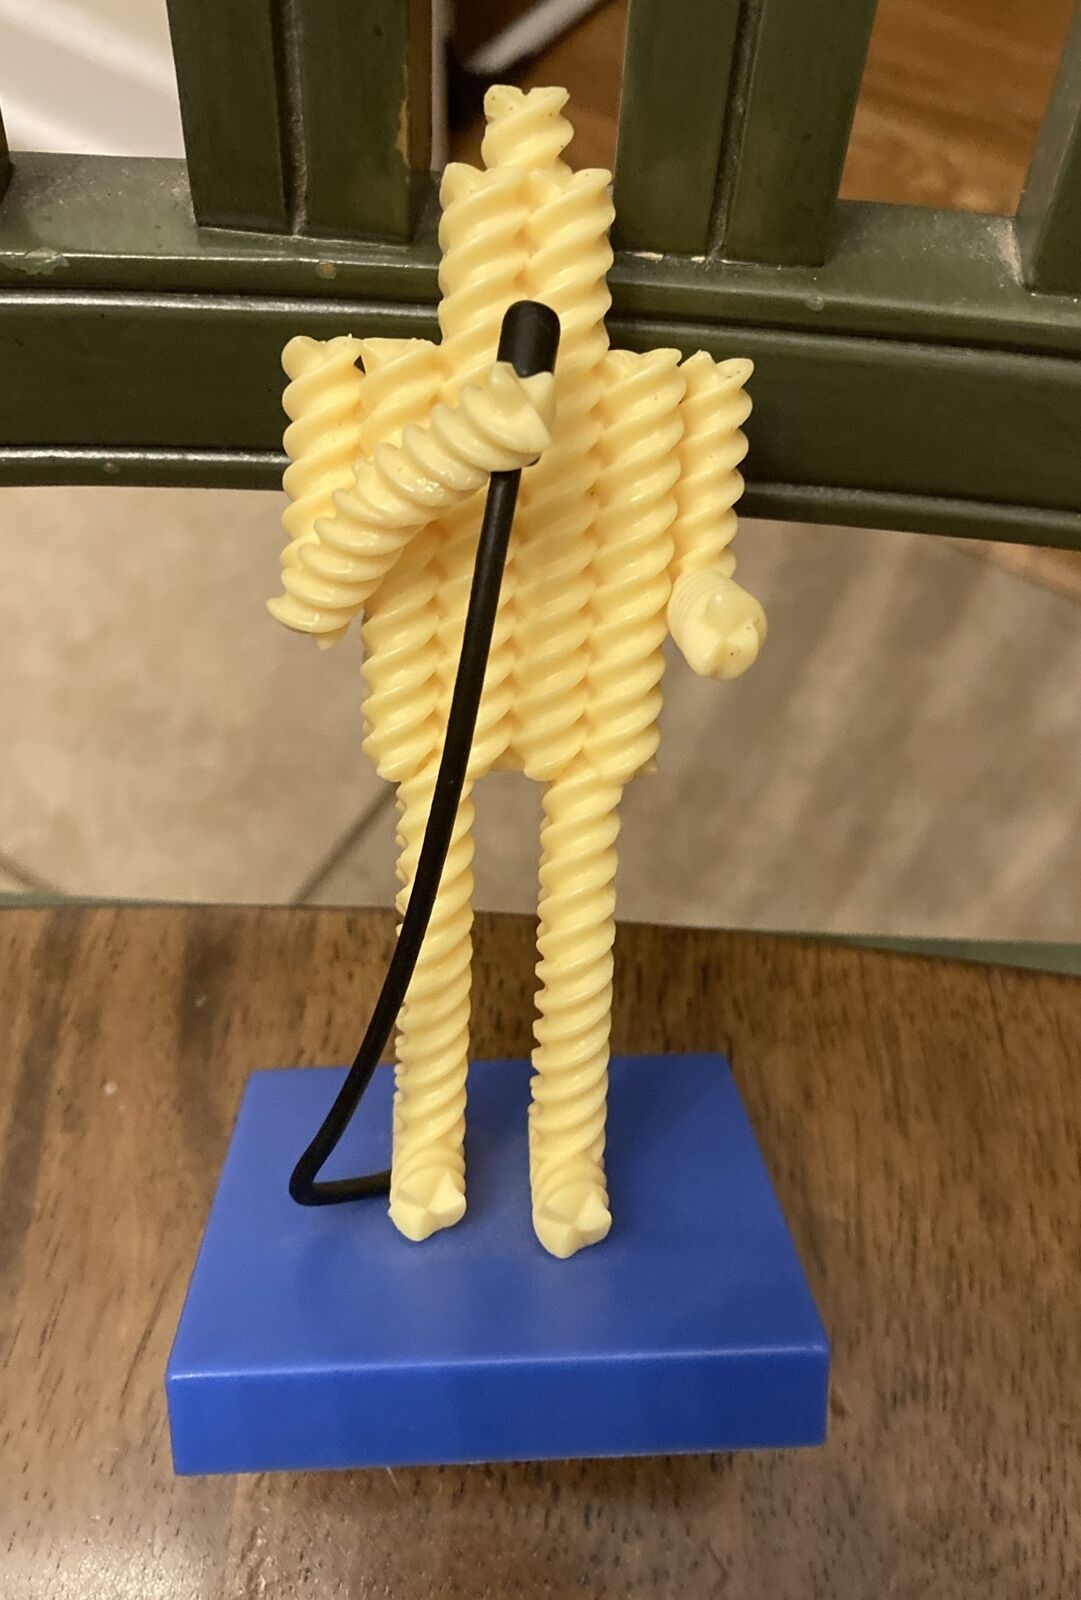 Fusilli Jerry Seinfeld Vinyl Figure Culturefly Pasta Figurine